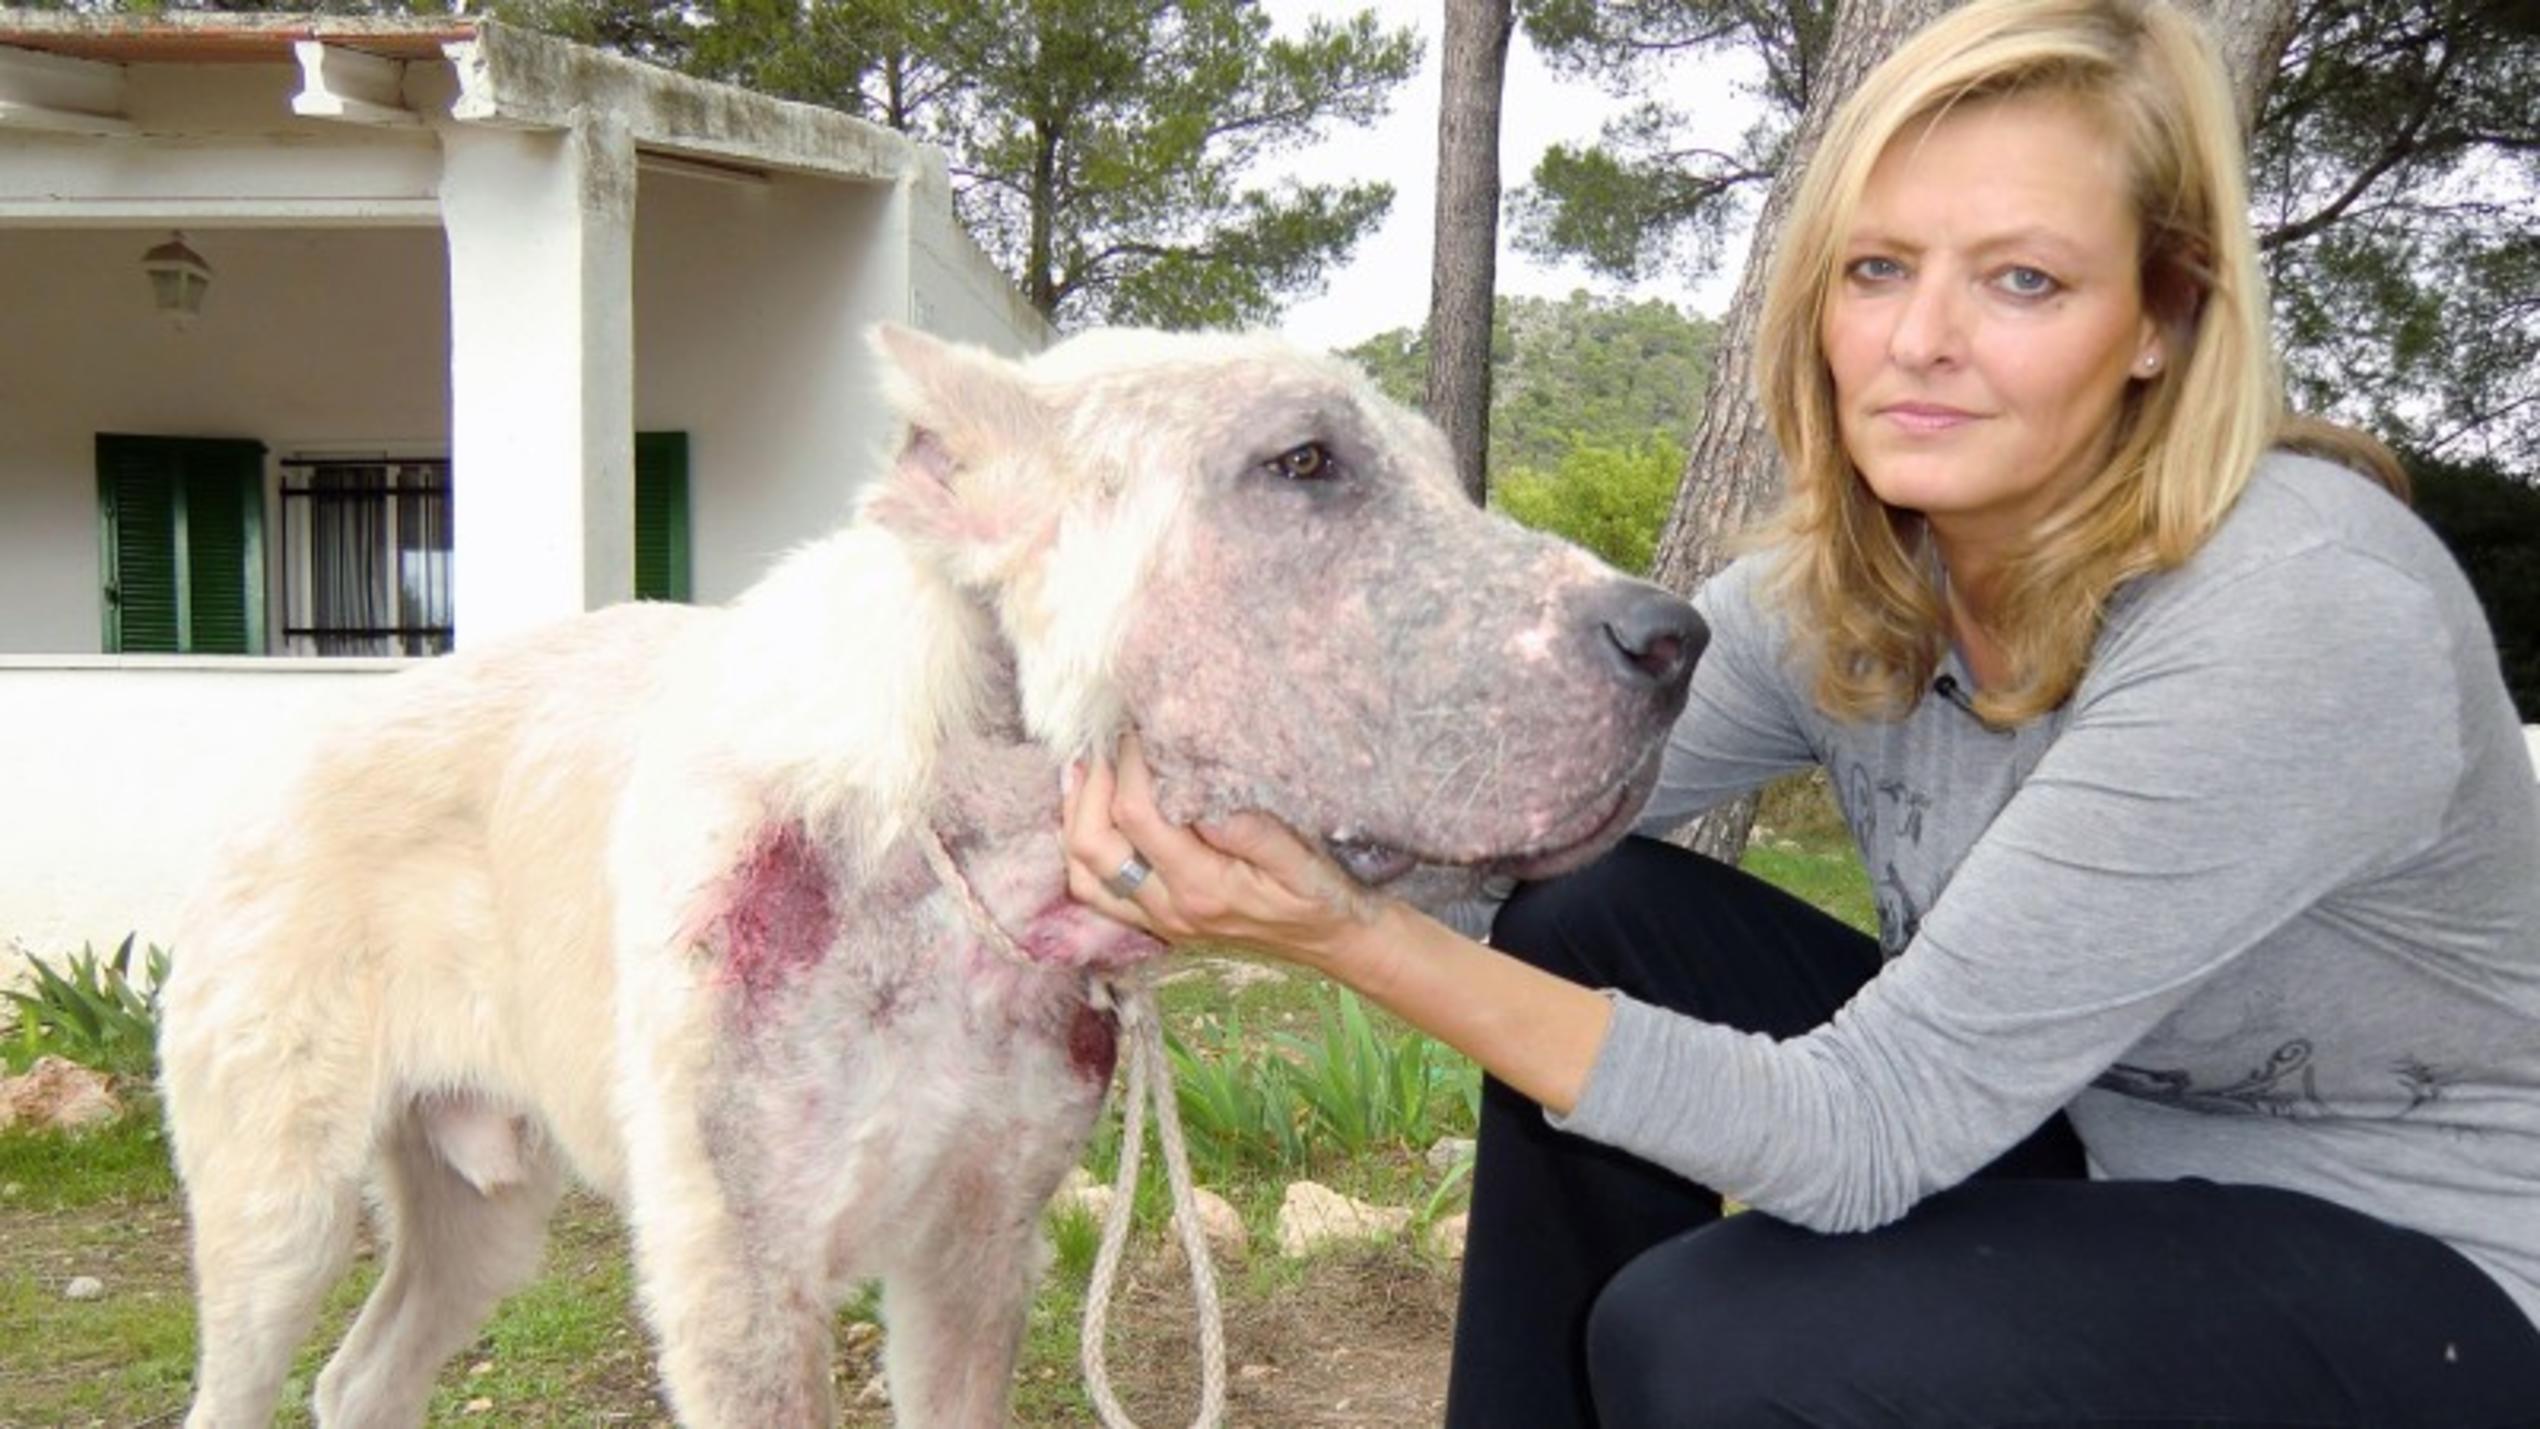 Petra Steiner vom Dachverband der balearischen Tierschutzvereine Baldea mit dem beschlagnahmten Hund